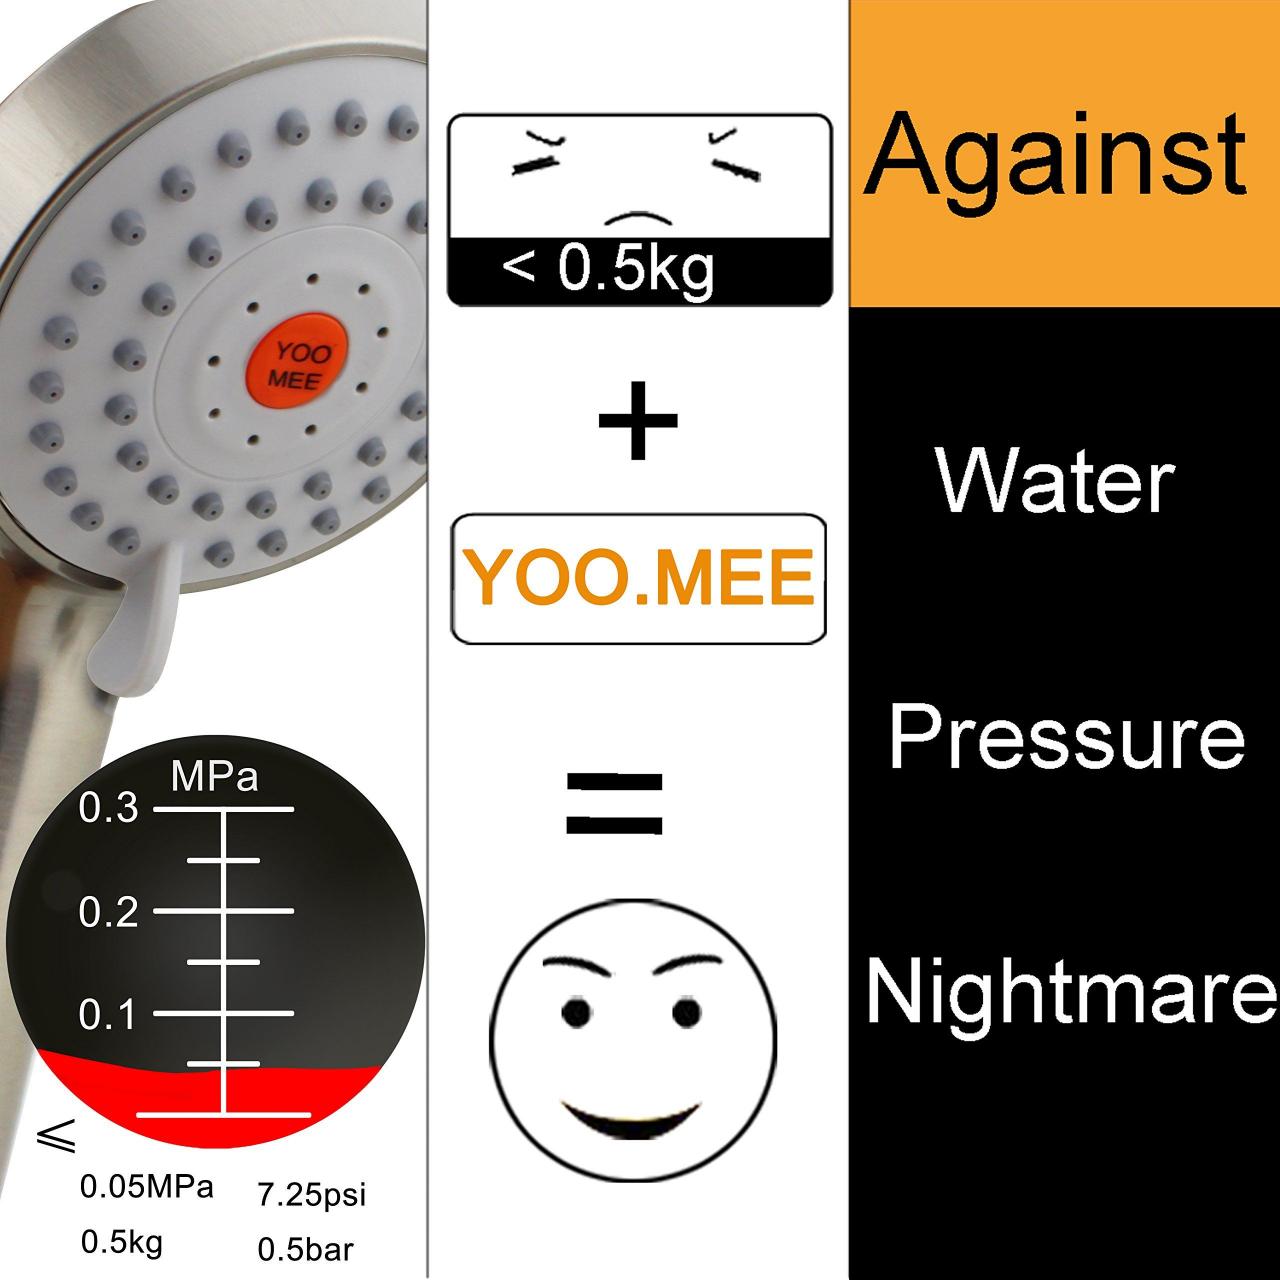 YOO.MEE High Pressure Handheld Shower Head with Powerful Shower Spray  against Low Pressure Water Supply Pipeline… | Handheld shower head, Power  shower, Low pressure